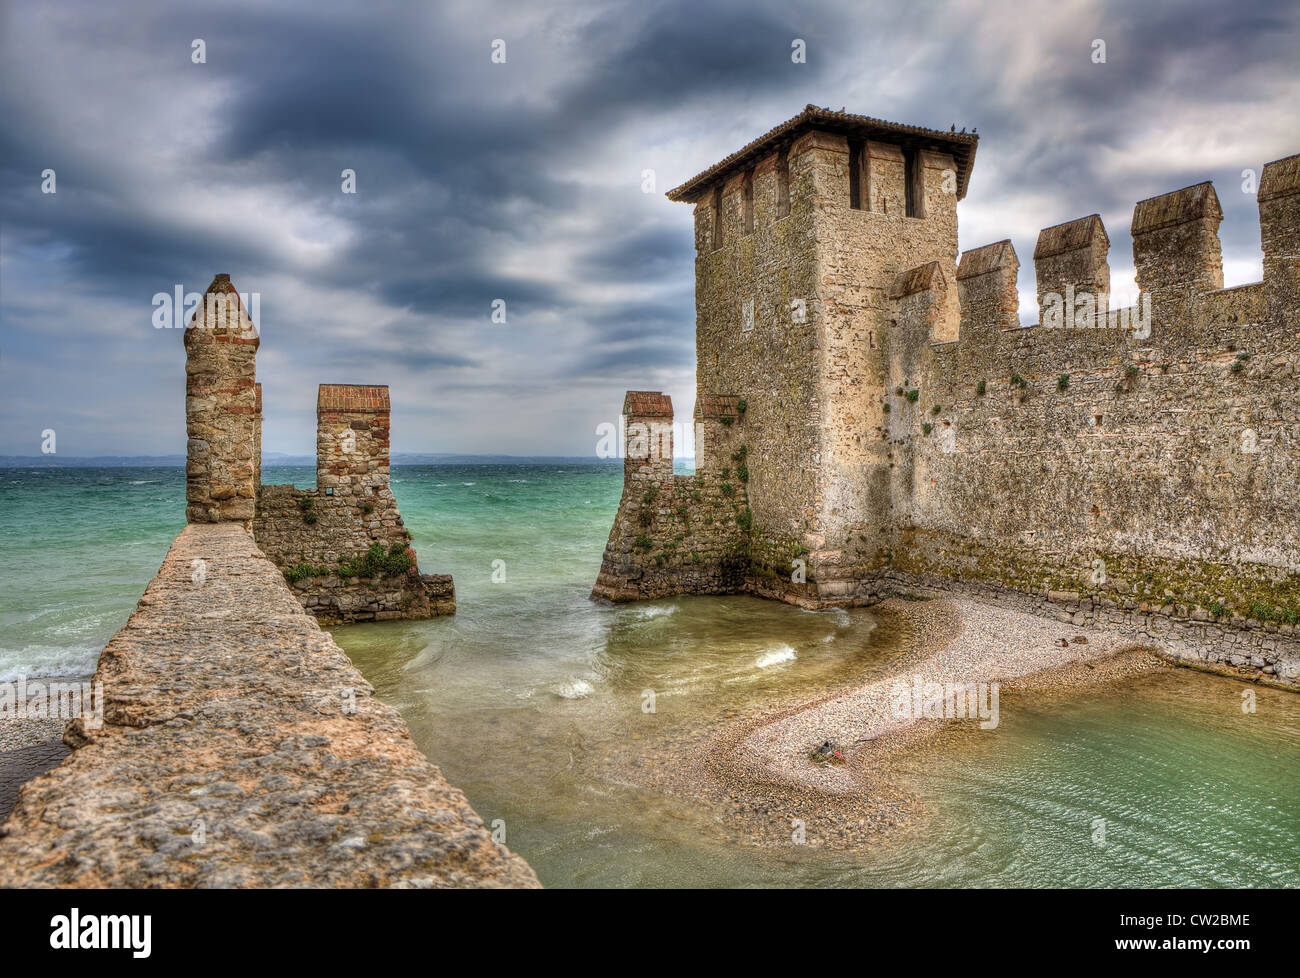 Il castello medievale della città di Sirmione sul Lago di Garda in Italia settentrionale. Foto Stock